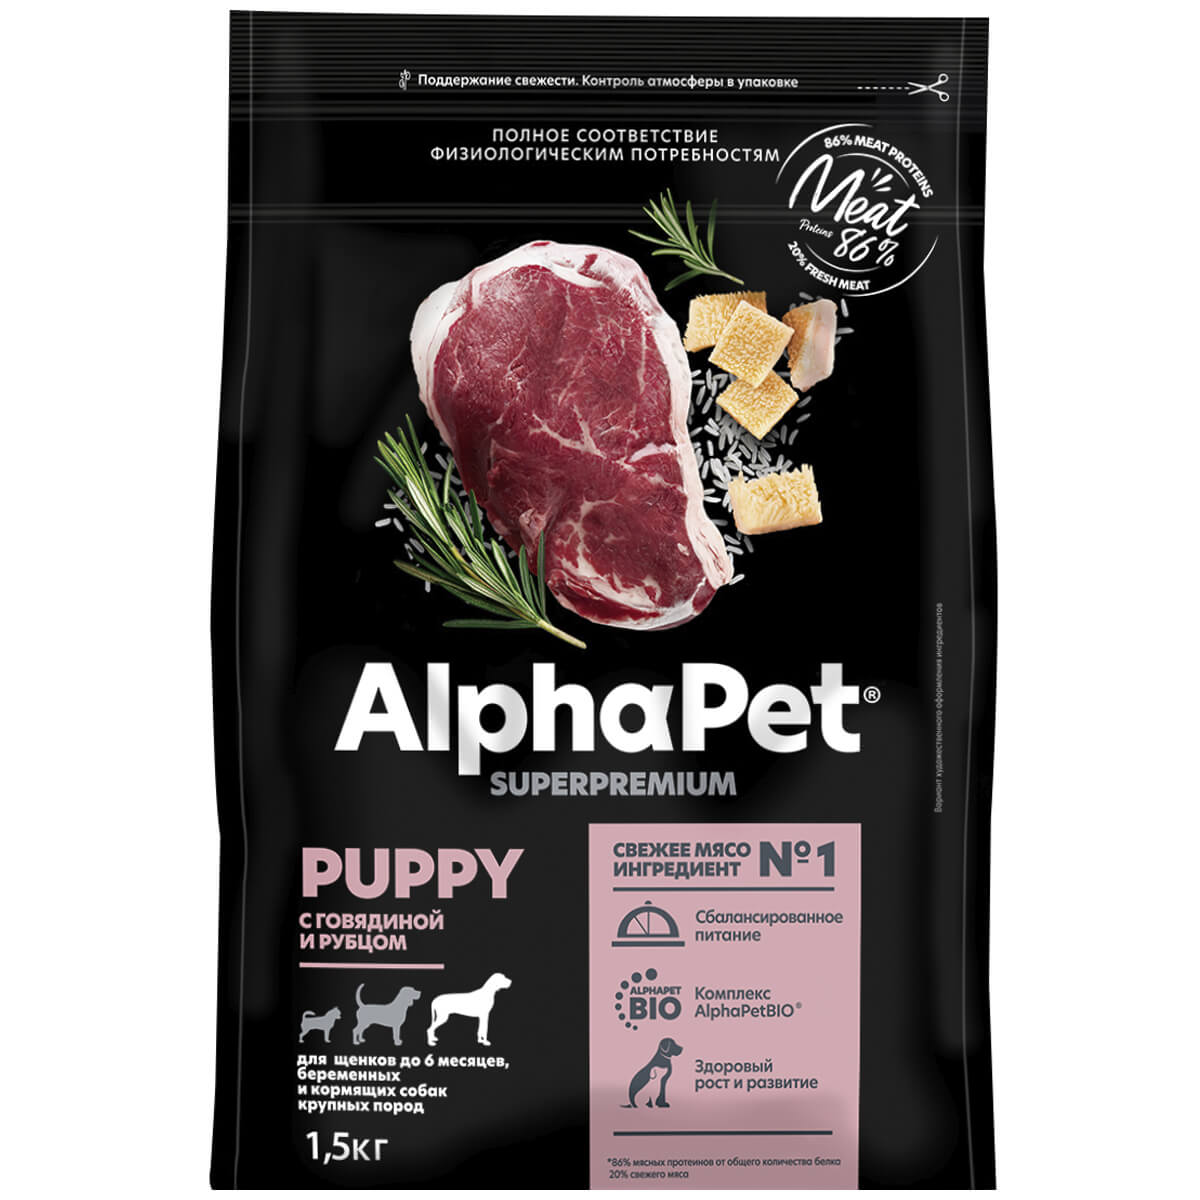 SUPERPREMIUM 1,5 кг сухой корм для щенков до 6 месяцев, беременных и кормящих собак крупных пород с говядиной и рубцом, ALPHAPET